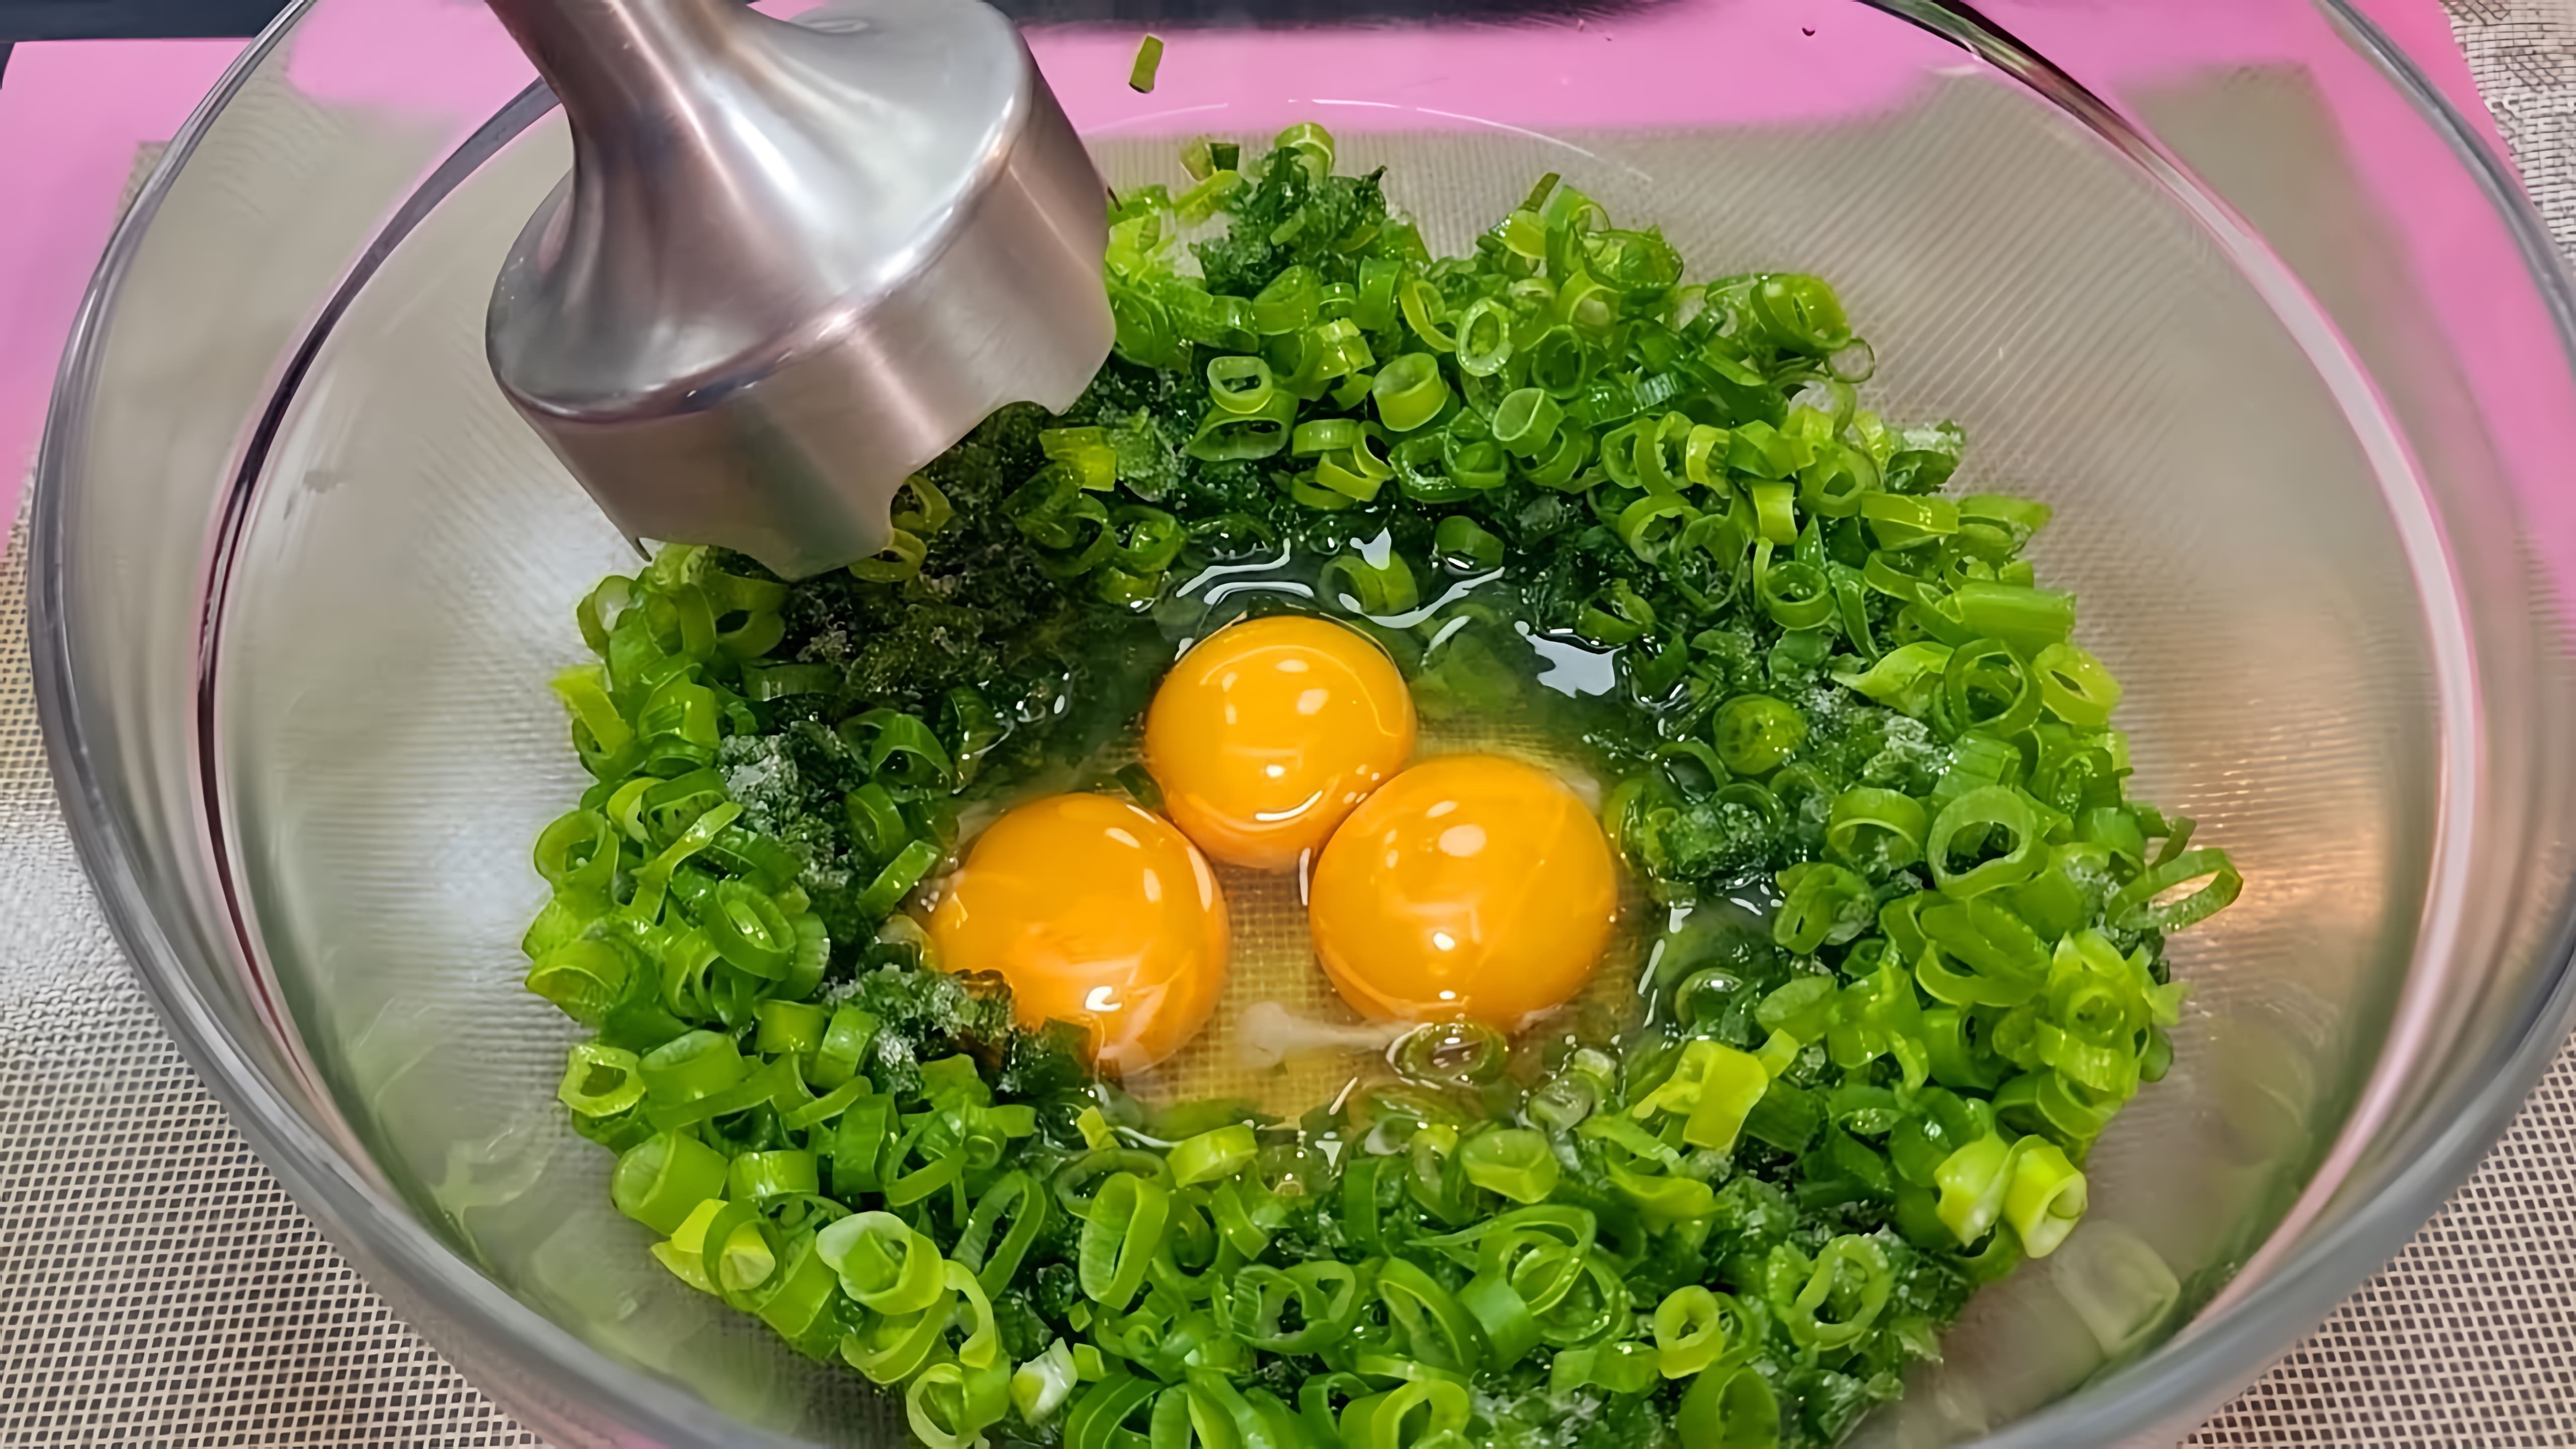 "Приготовление зеленого лука с яйцом - просто, вкусно и восхитительно!"

В этом видео-ролике демонстрируется процесс приготовления простого, но вкусного блюда - зеленого лука с яйцом